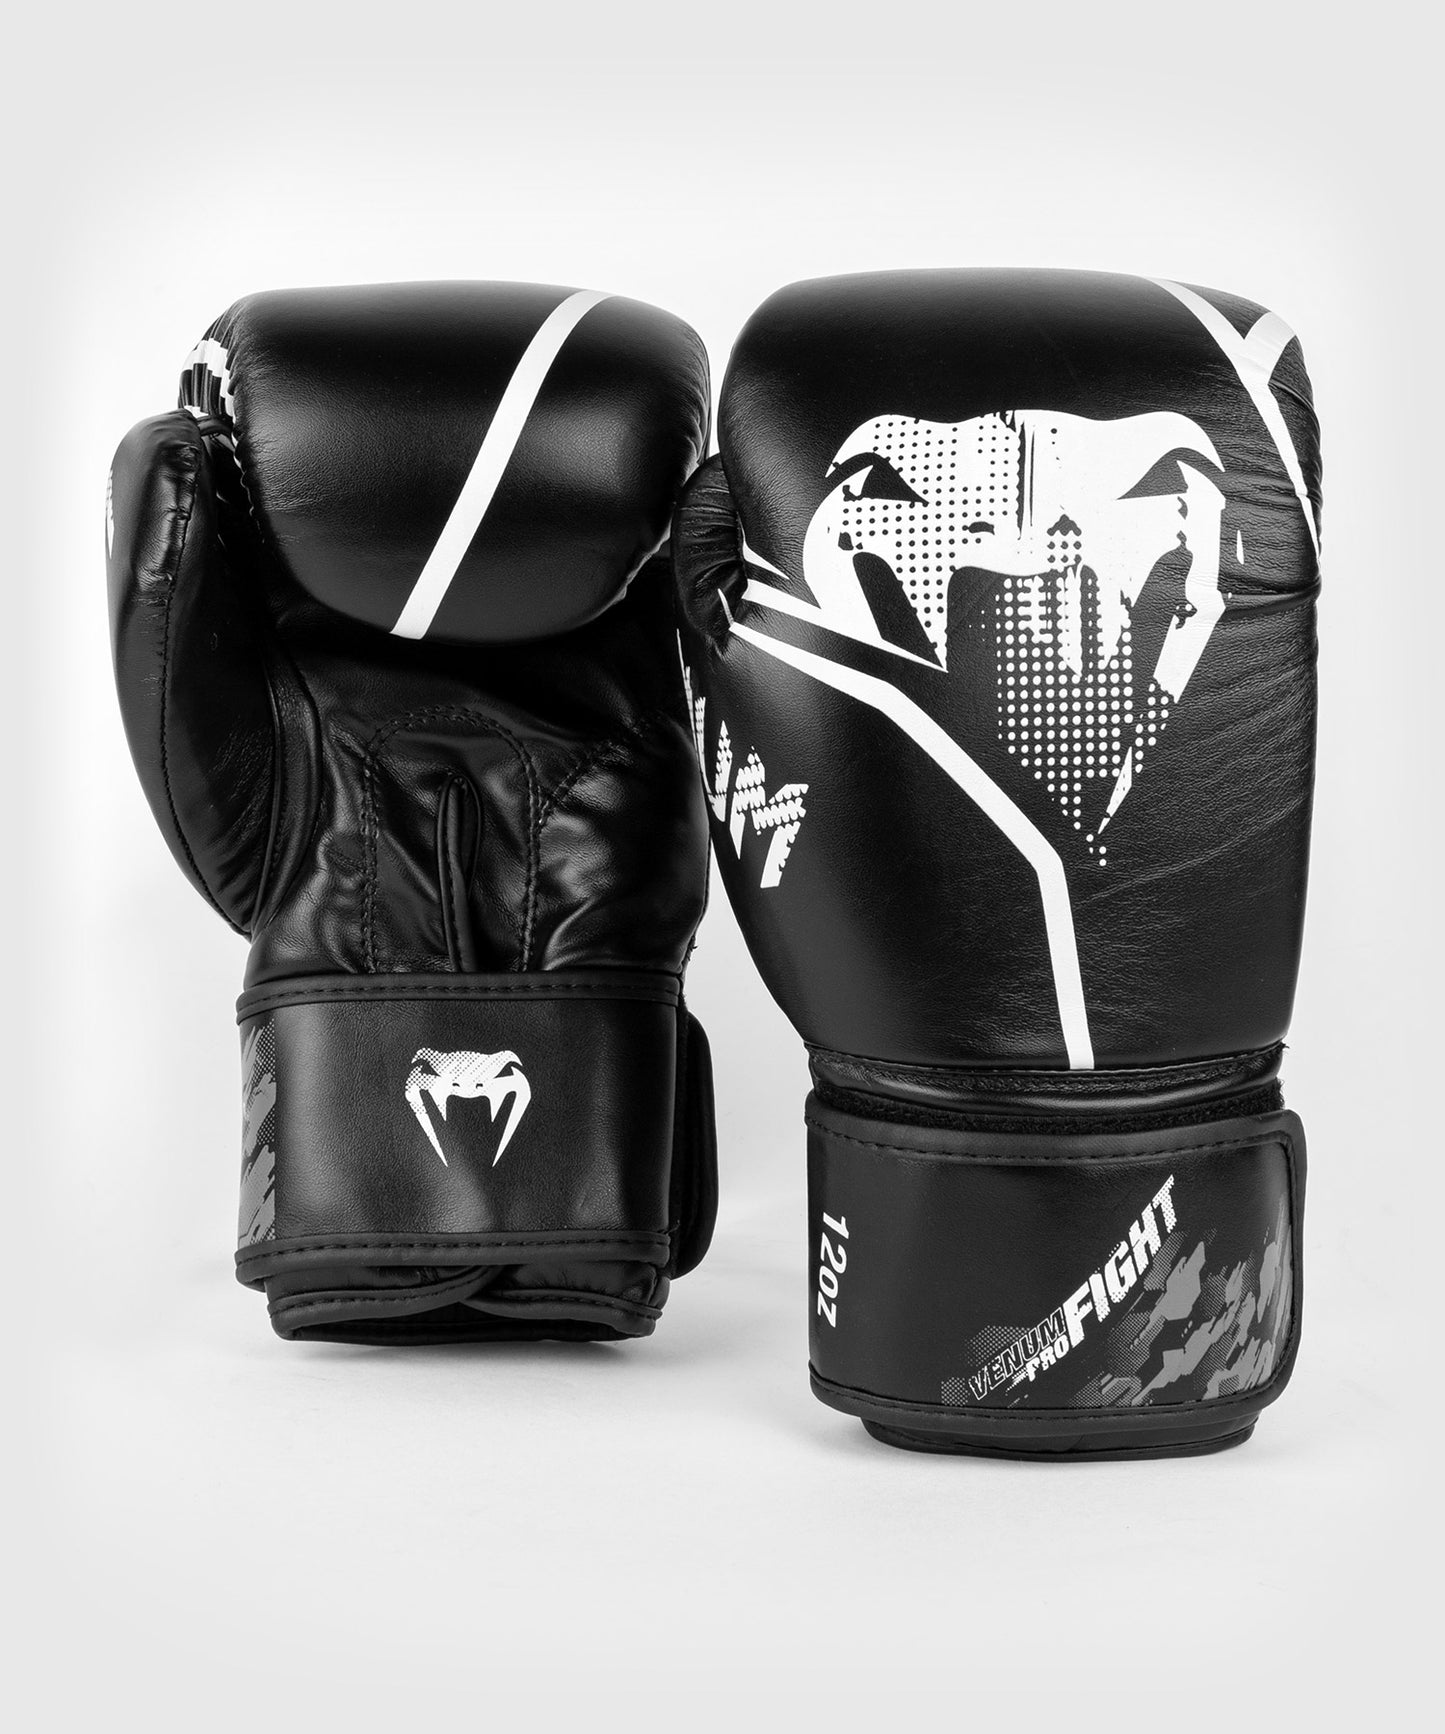 Venum Contender 1.2 Boxing Gloves - Black/White